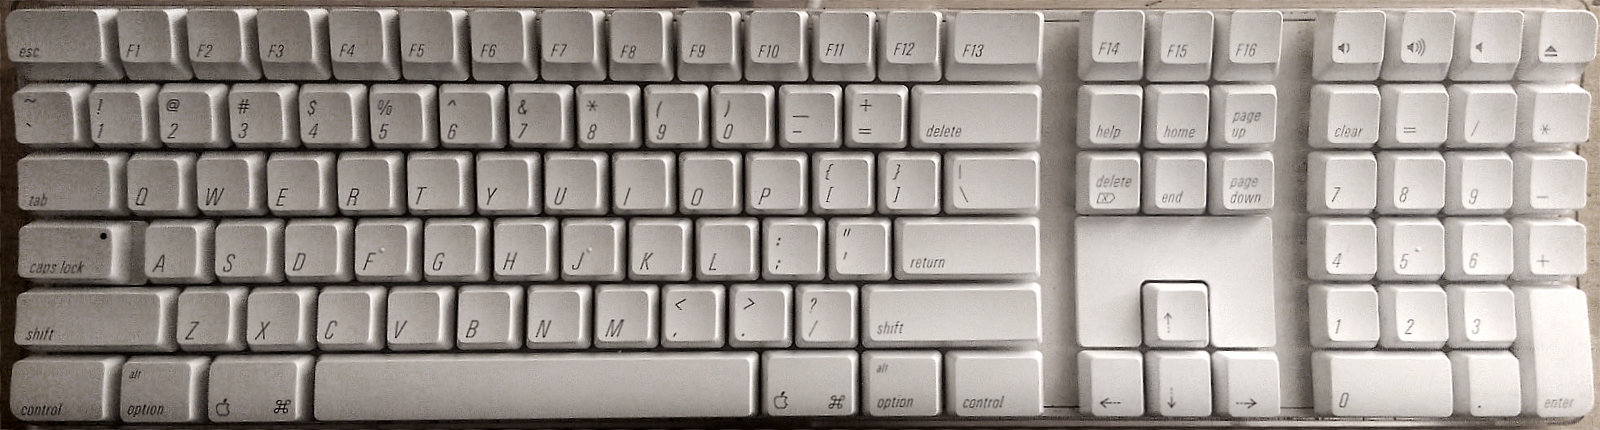 Figure 29: Desktop keyboard from the Mac Intel era. Source: Wikipedia.